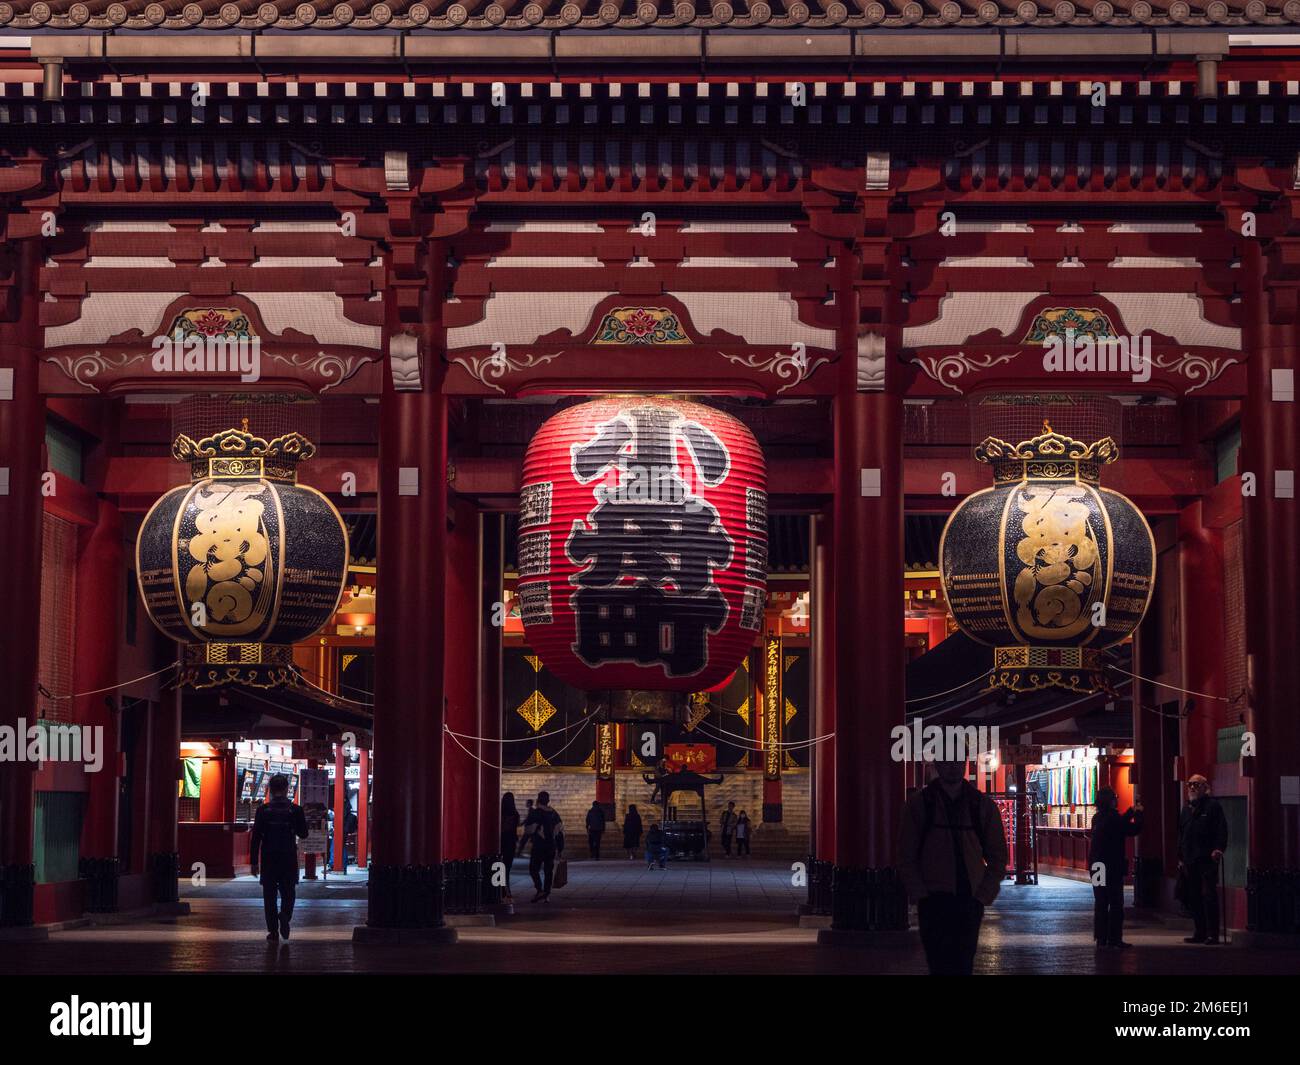 Tokyo, Giappone - 24.2.20: Sensoji in serata, con pochissimi visitatori presenti Foto Stock